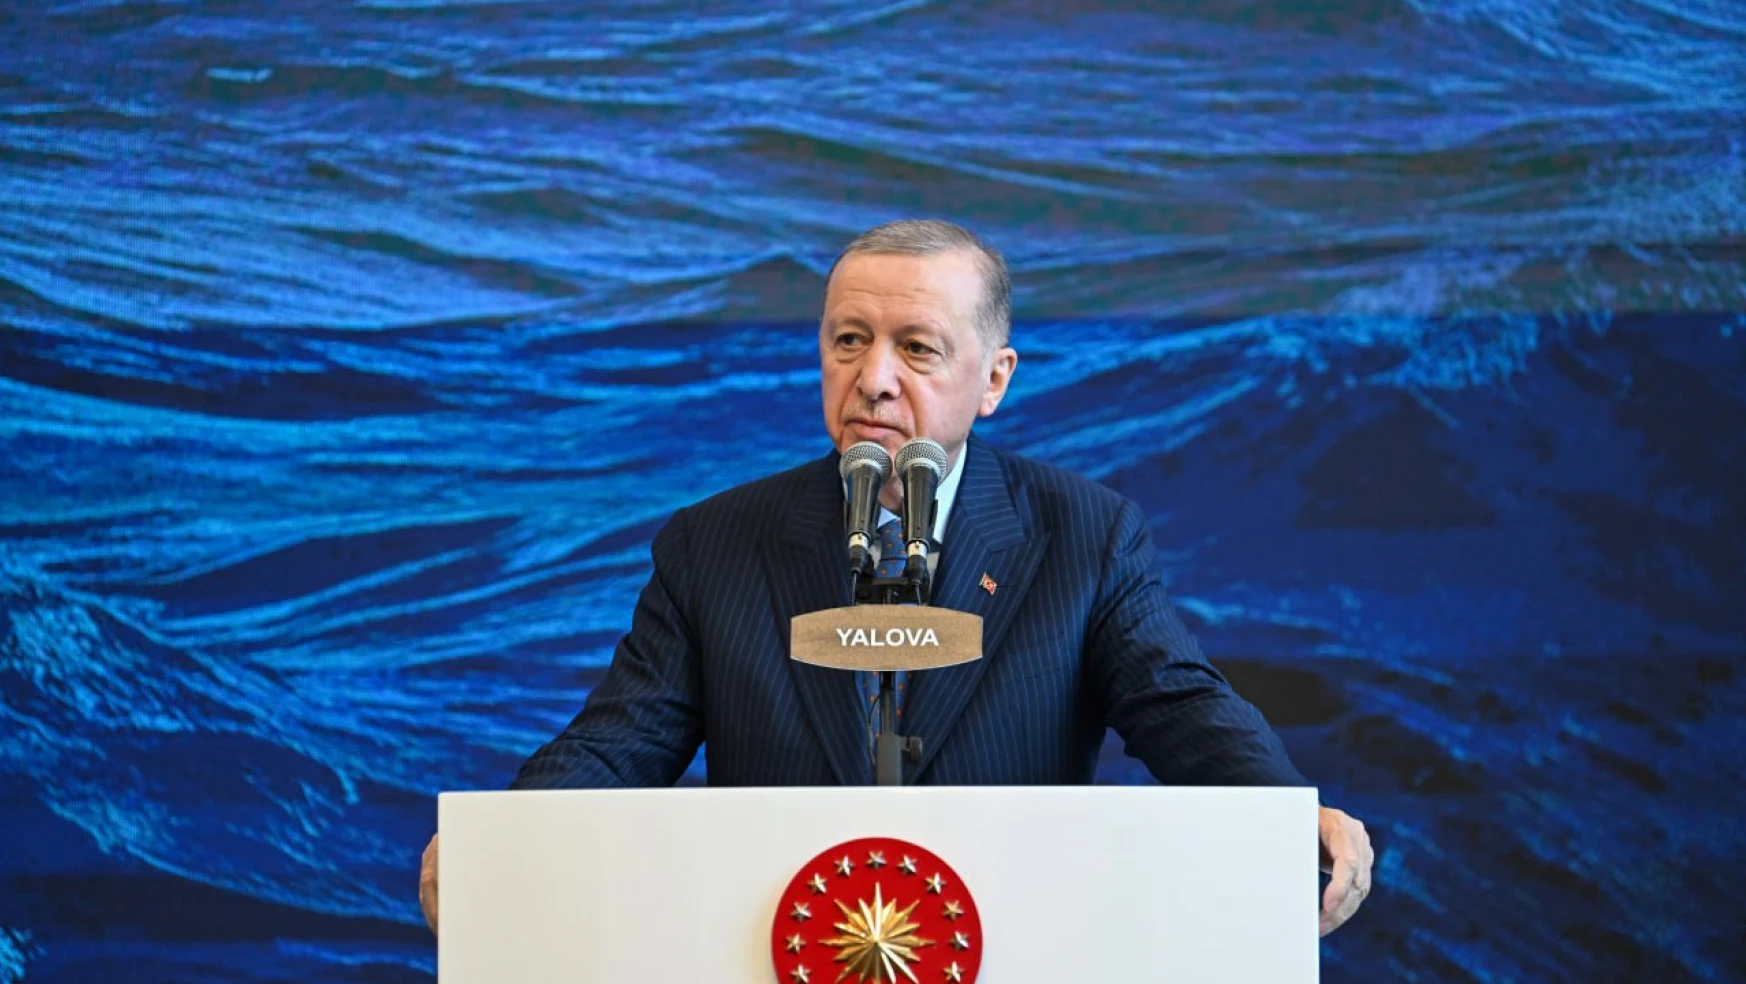 Cumhurbaşkanı Erdoğan'dan Büyükçekmece'deki olay ve DEM parti üzerinden CHP'ye eleştiri